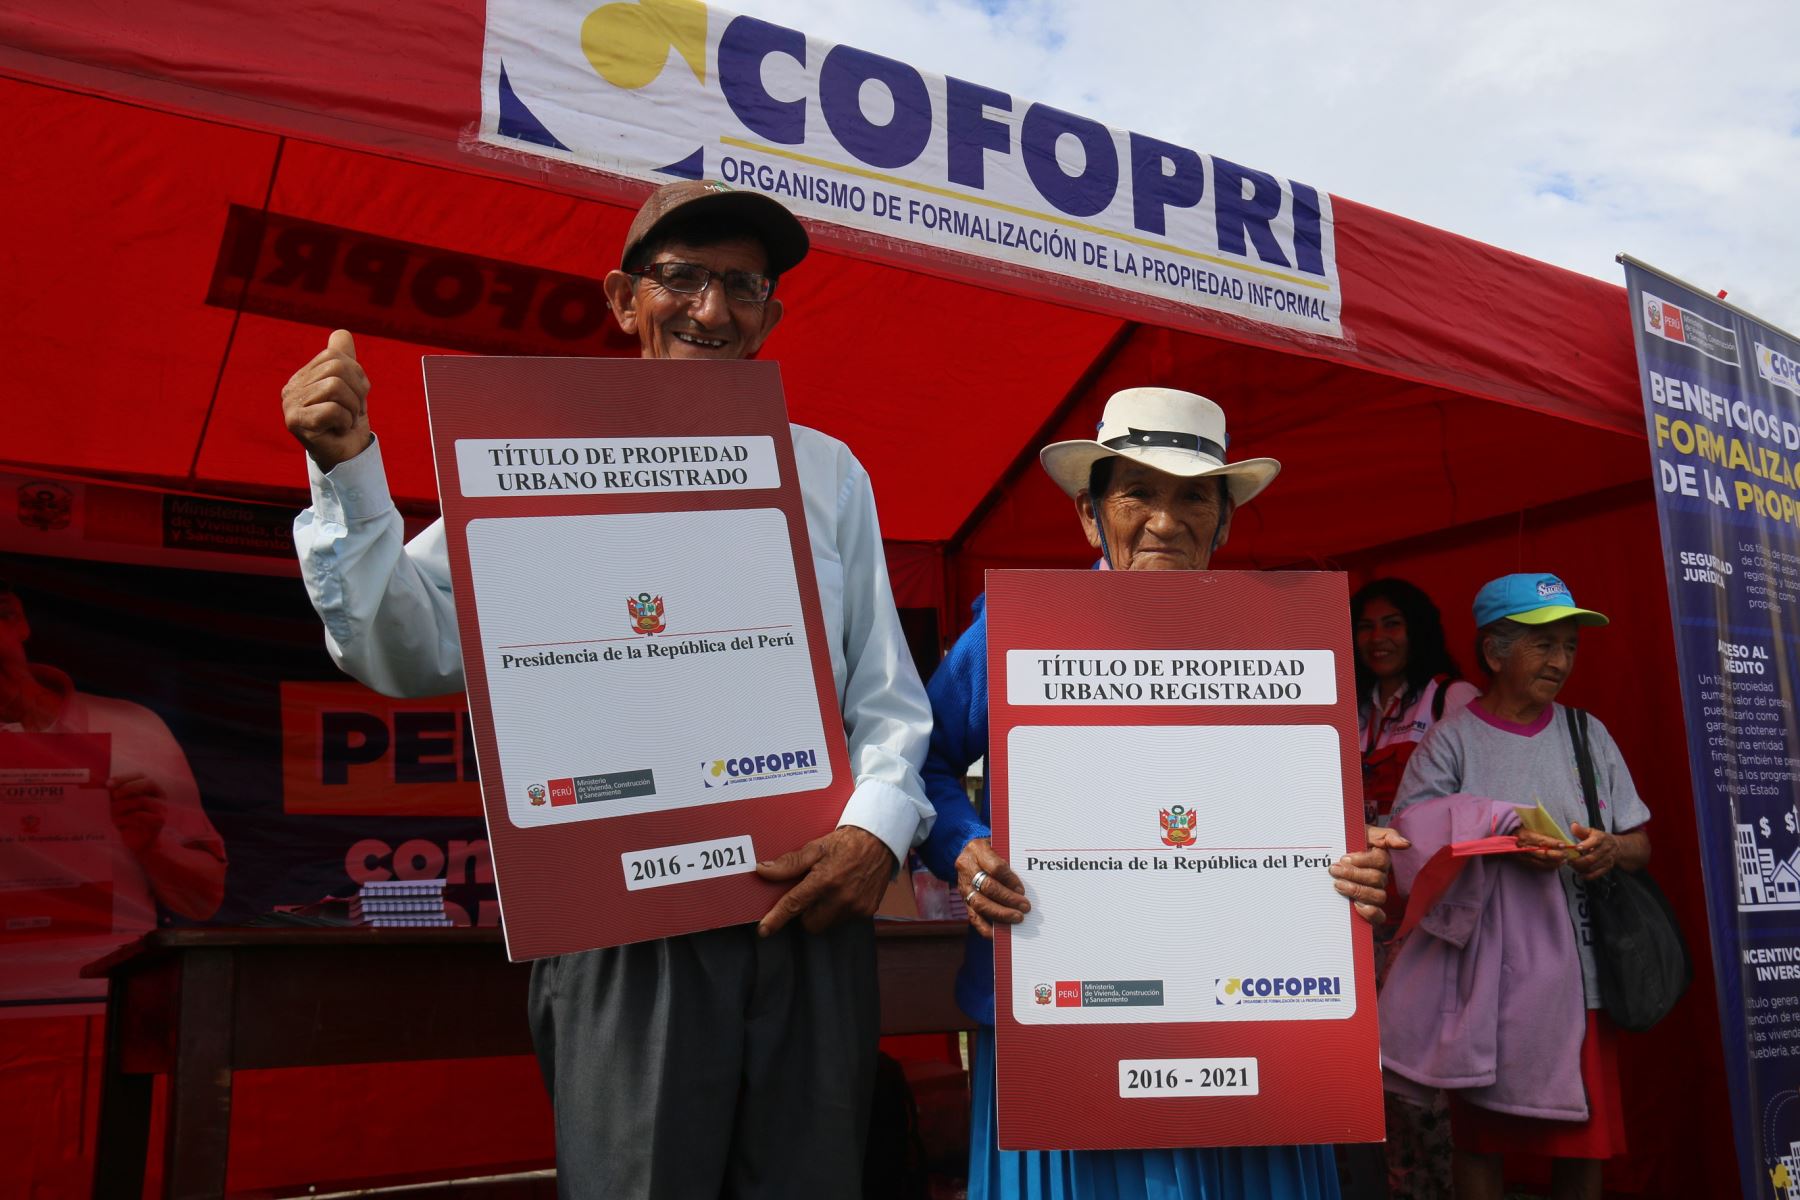 Más de 15,000 familias ya acceden a viviendas formalizadas, destaca Cofopri.Foto:  ANDINA/Difusión.